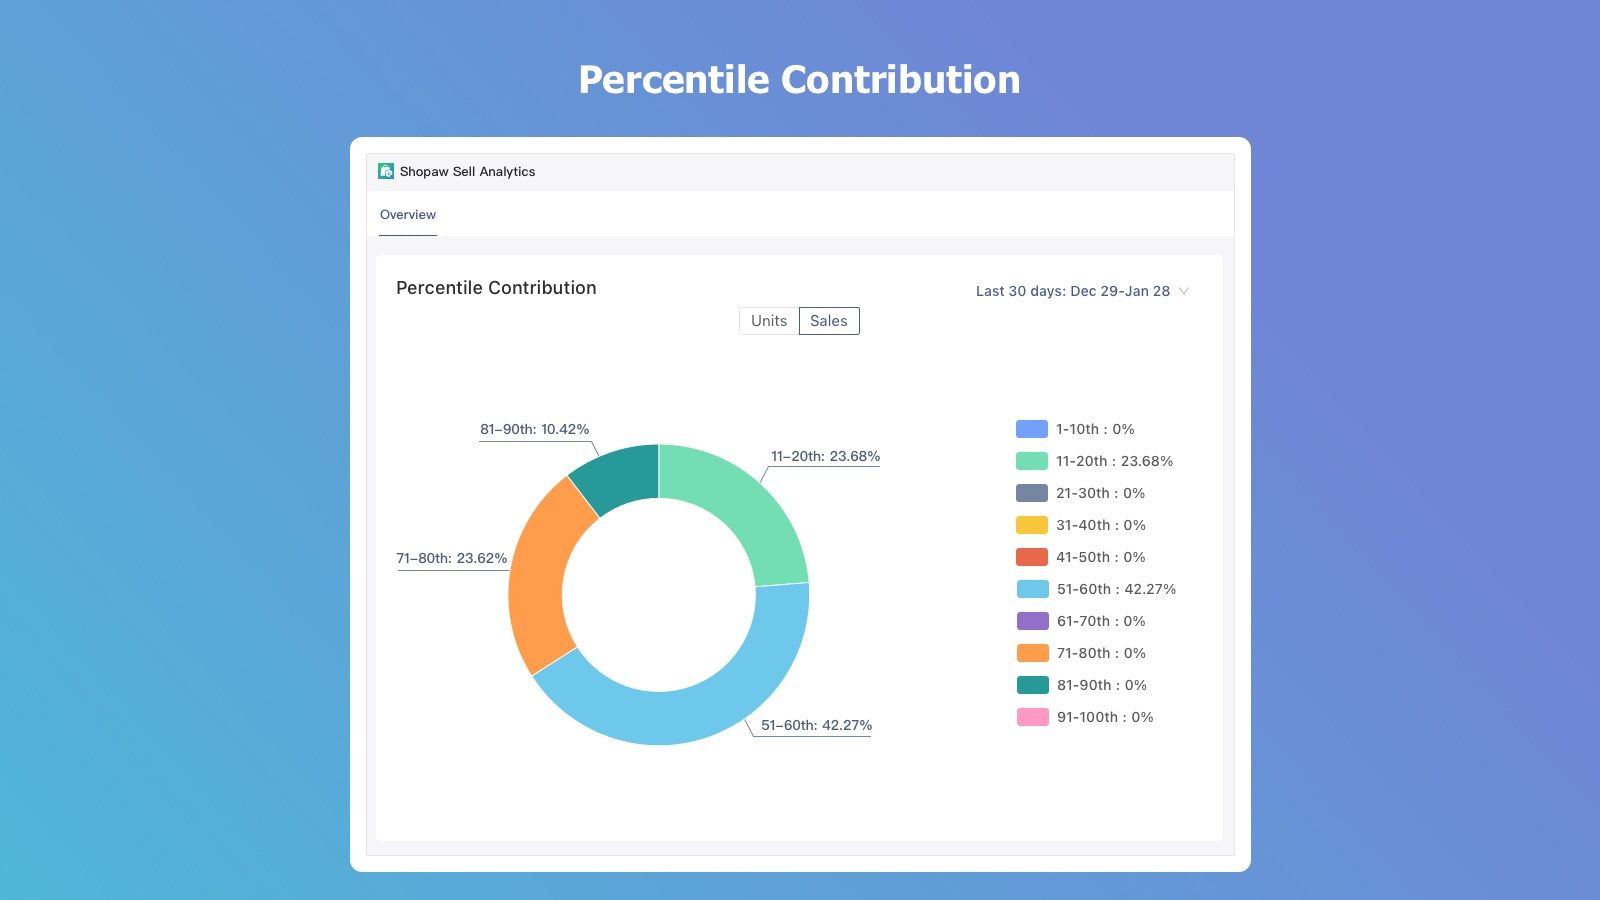 Percentile contribution